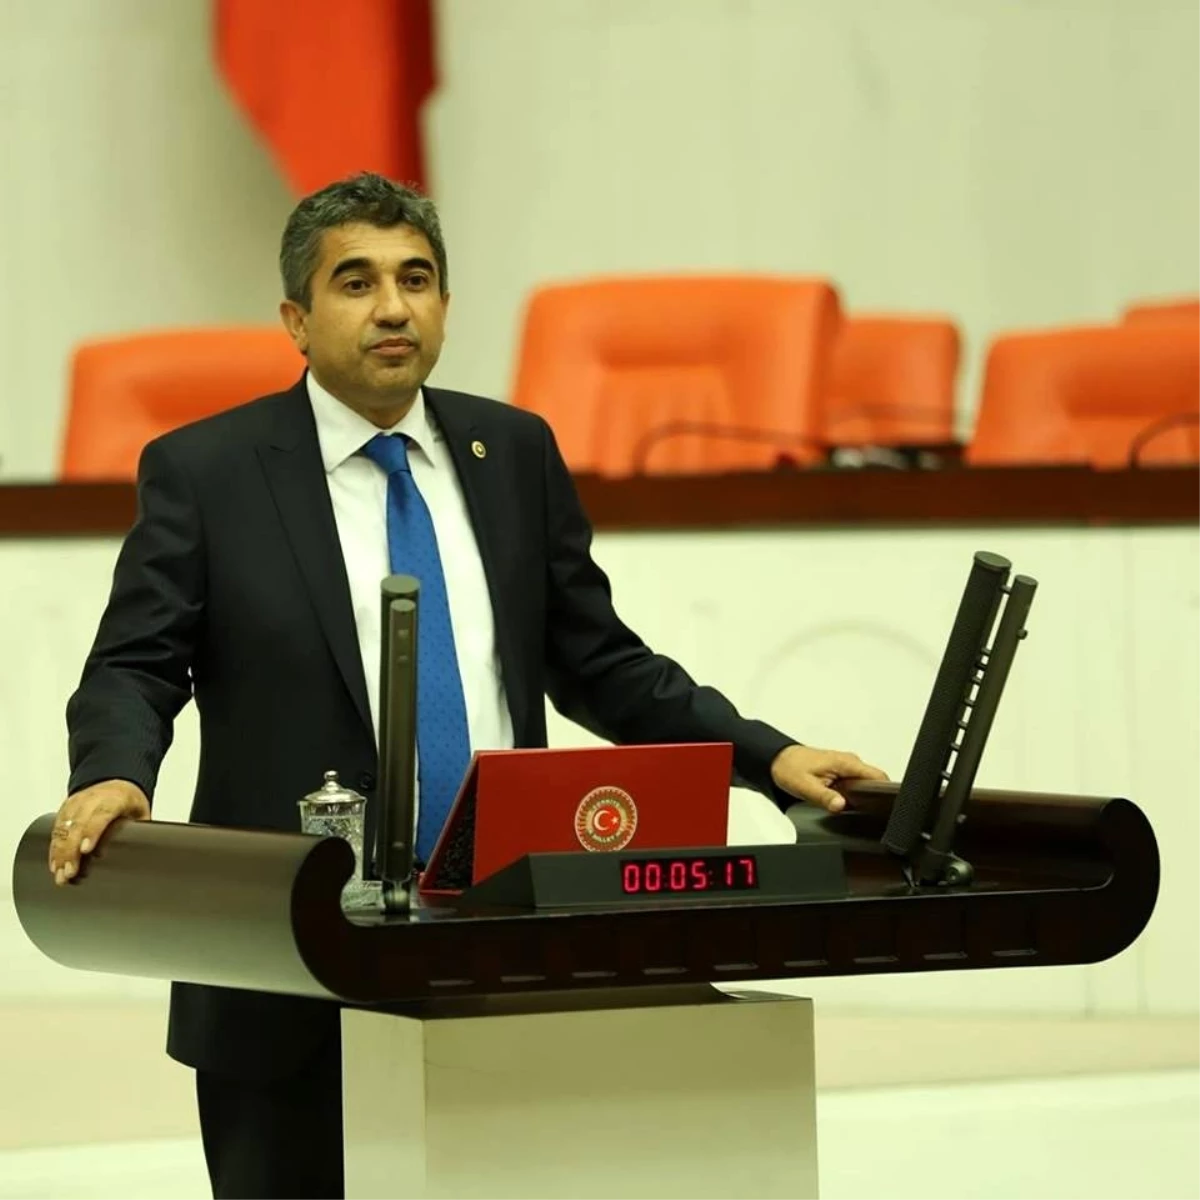 CHP Kırşehir milletvekili İlhan, "Virüsün kolay yayılmasını sağlayacak her esneklik risktir"